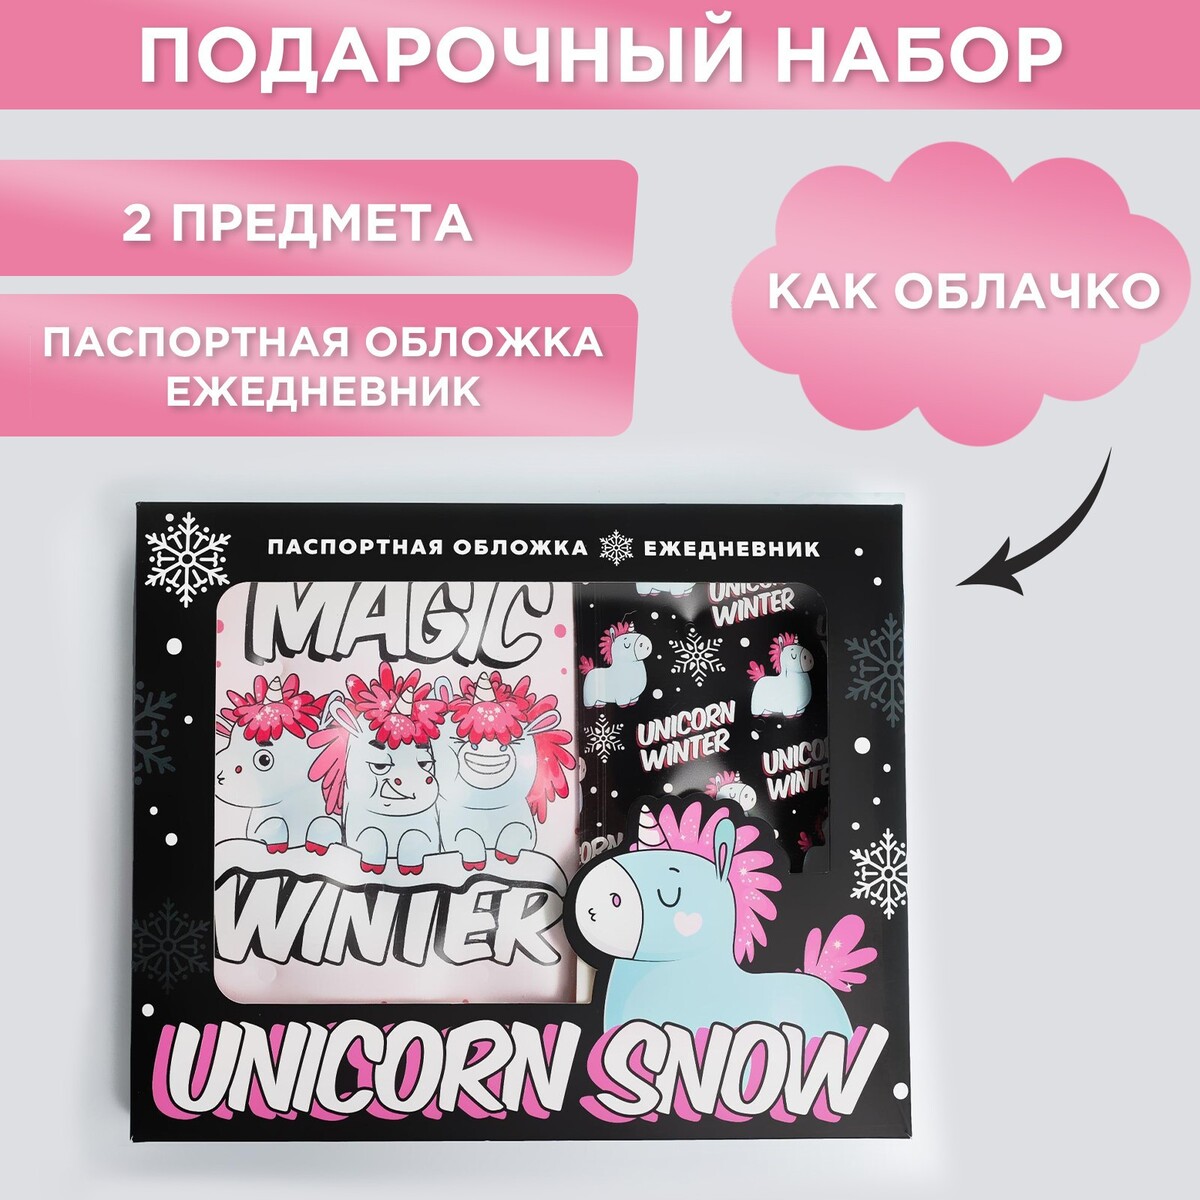  unicorn snow:  -  -